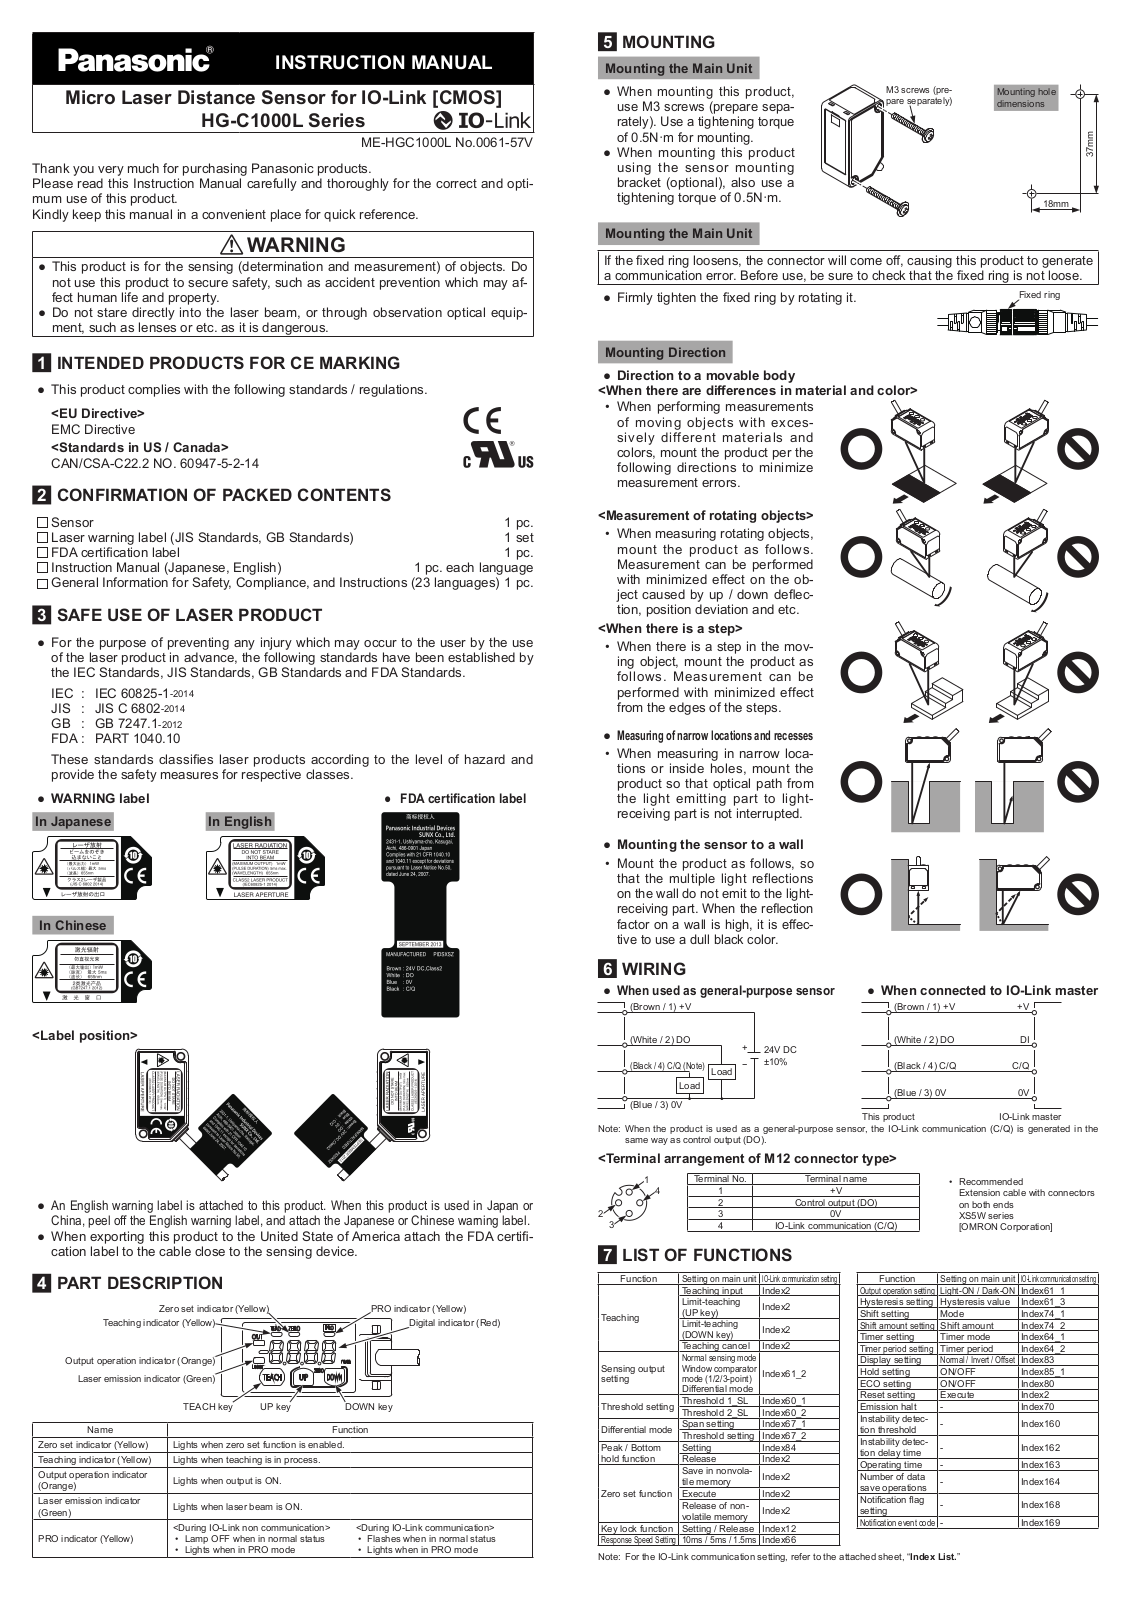 Panasonic HG-C1400L3-P-J, HG-C1400L3-P, HG-C1200L3-P-J, HG-C1100L3-P-J, HG-C1030L3-P-J User Manual